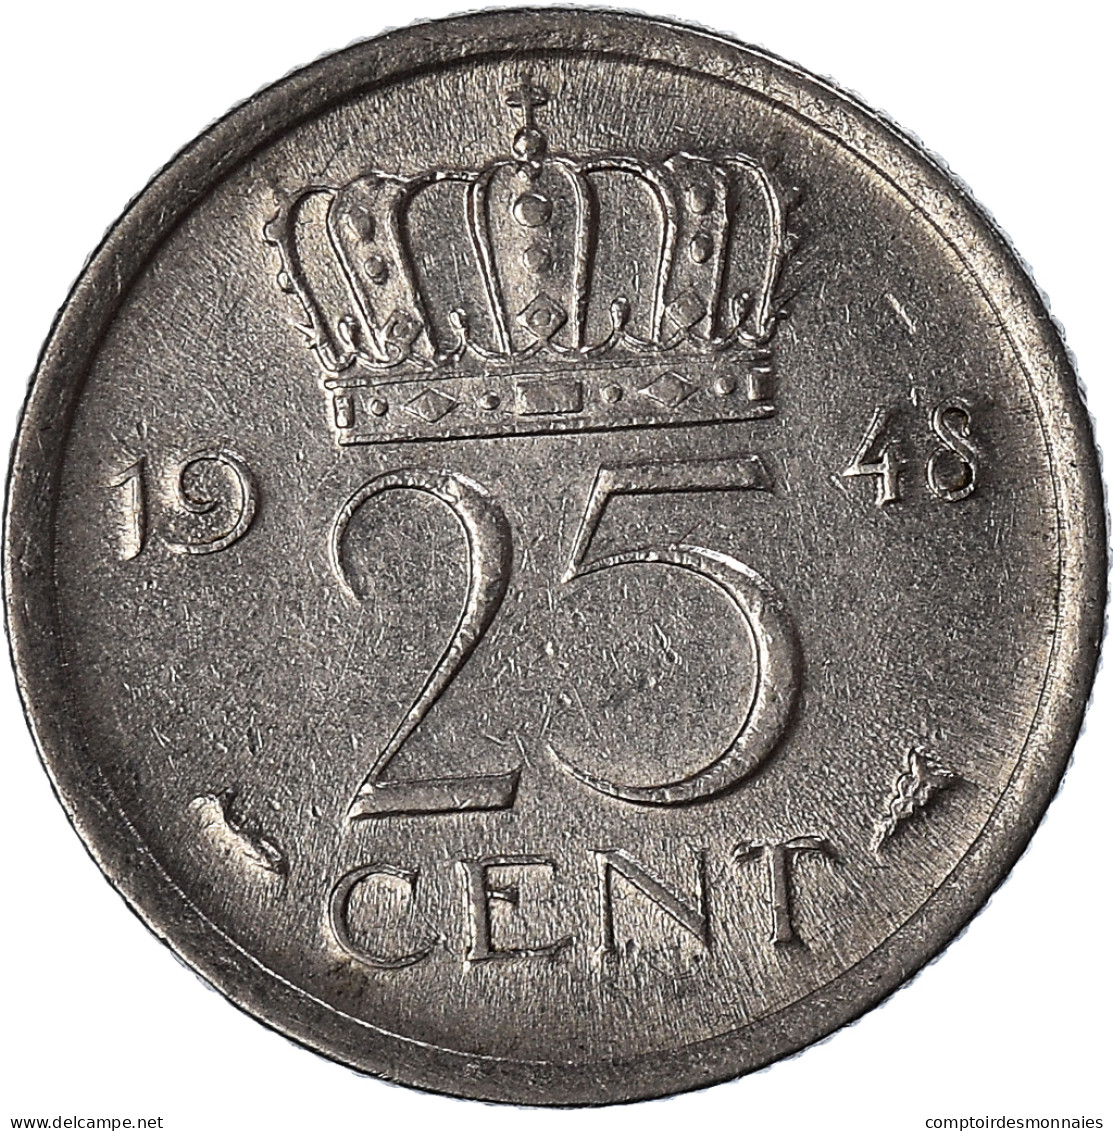 Monnaie, Pays-Bas, 25 Cents, 1948 - 2.5 Centavos